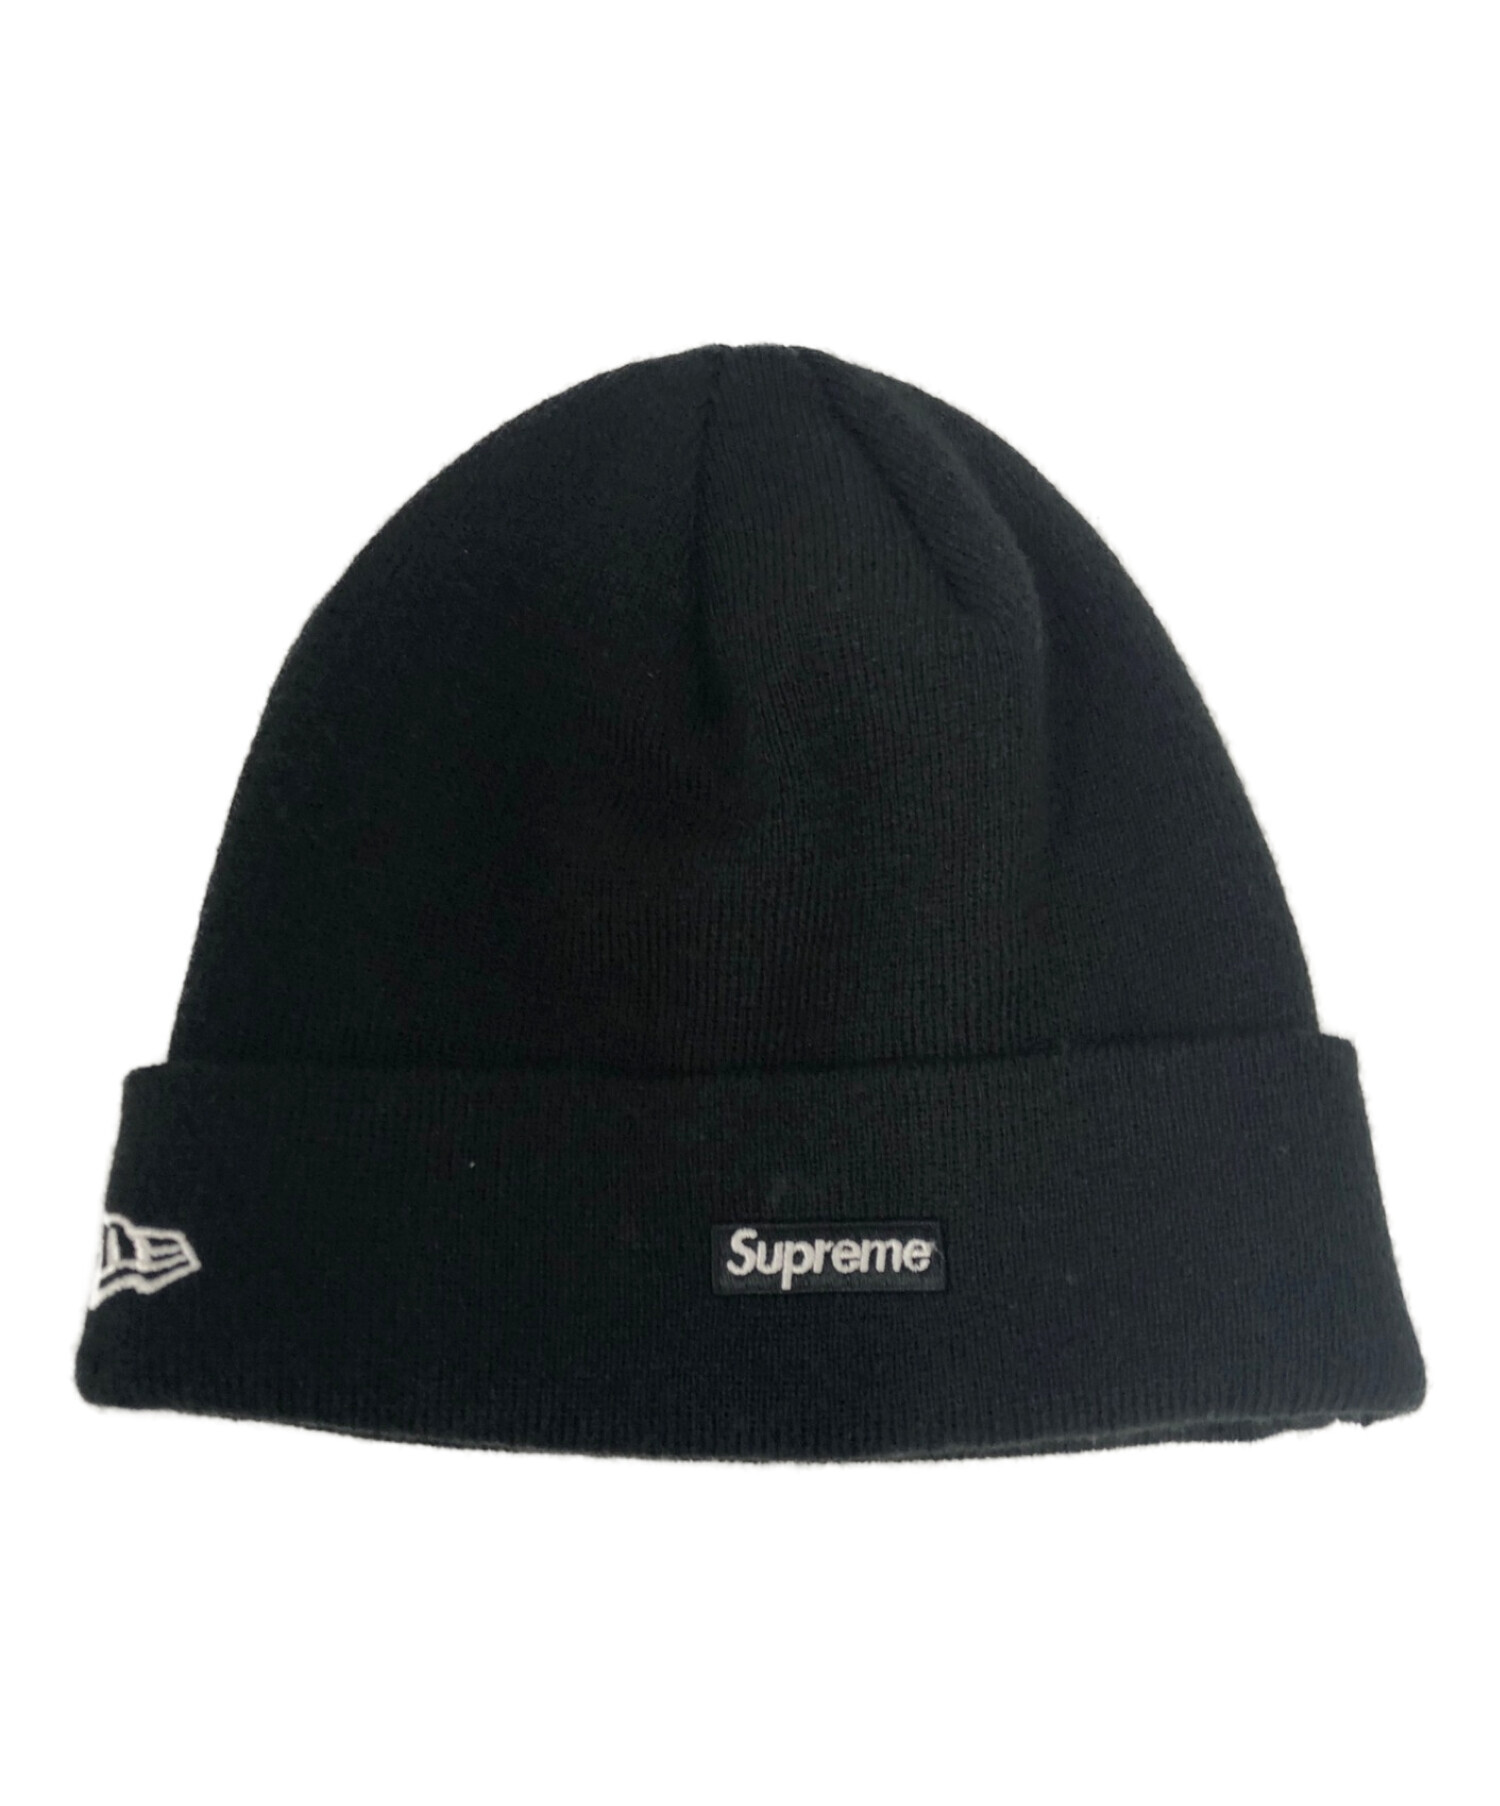 Supreme (シュプリーム) New Era (ニューエラ) ニット帽 ブラック